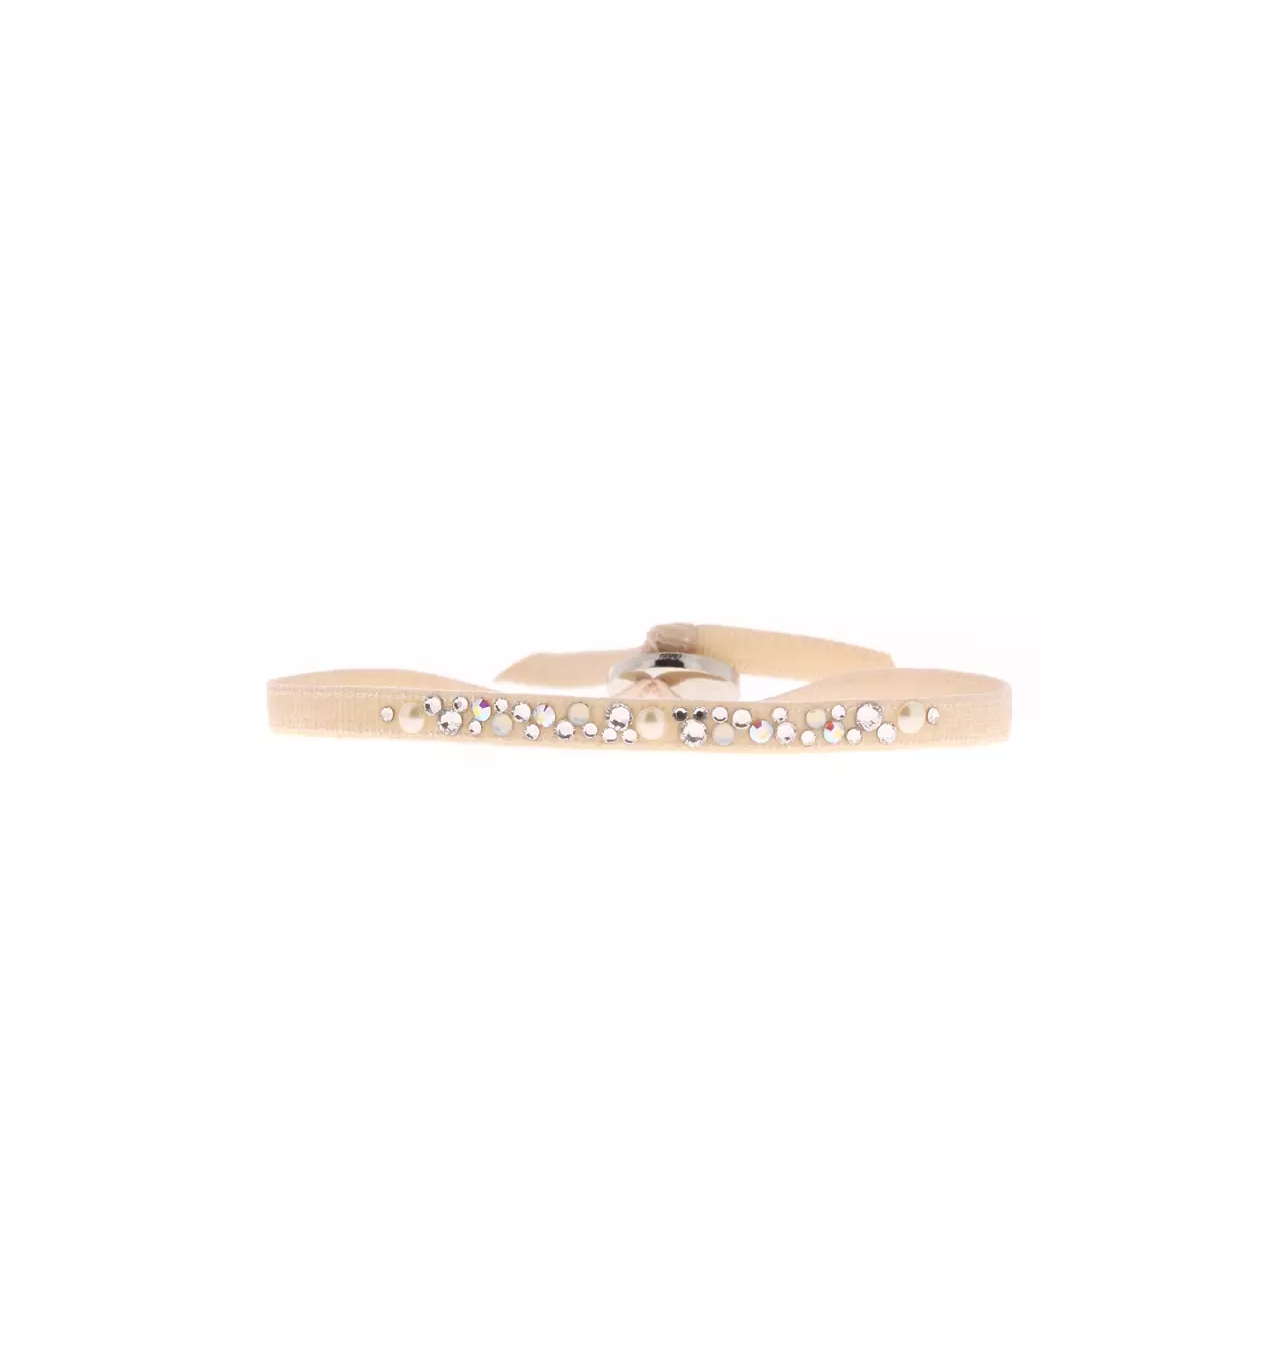 Bracelet Les Interchangeables A58781 - Perle Forme Carrée Beige Rose Femme  sur Bijourama, référence des bijoux Femme en ligne